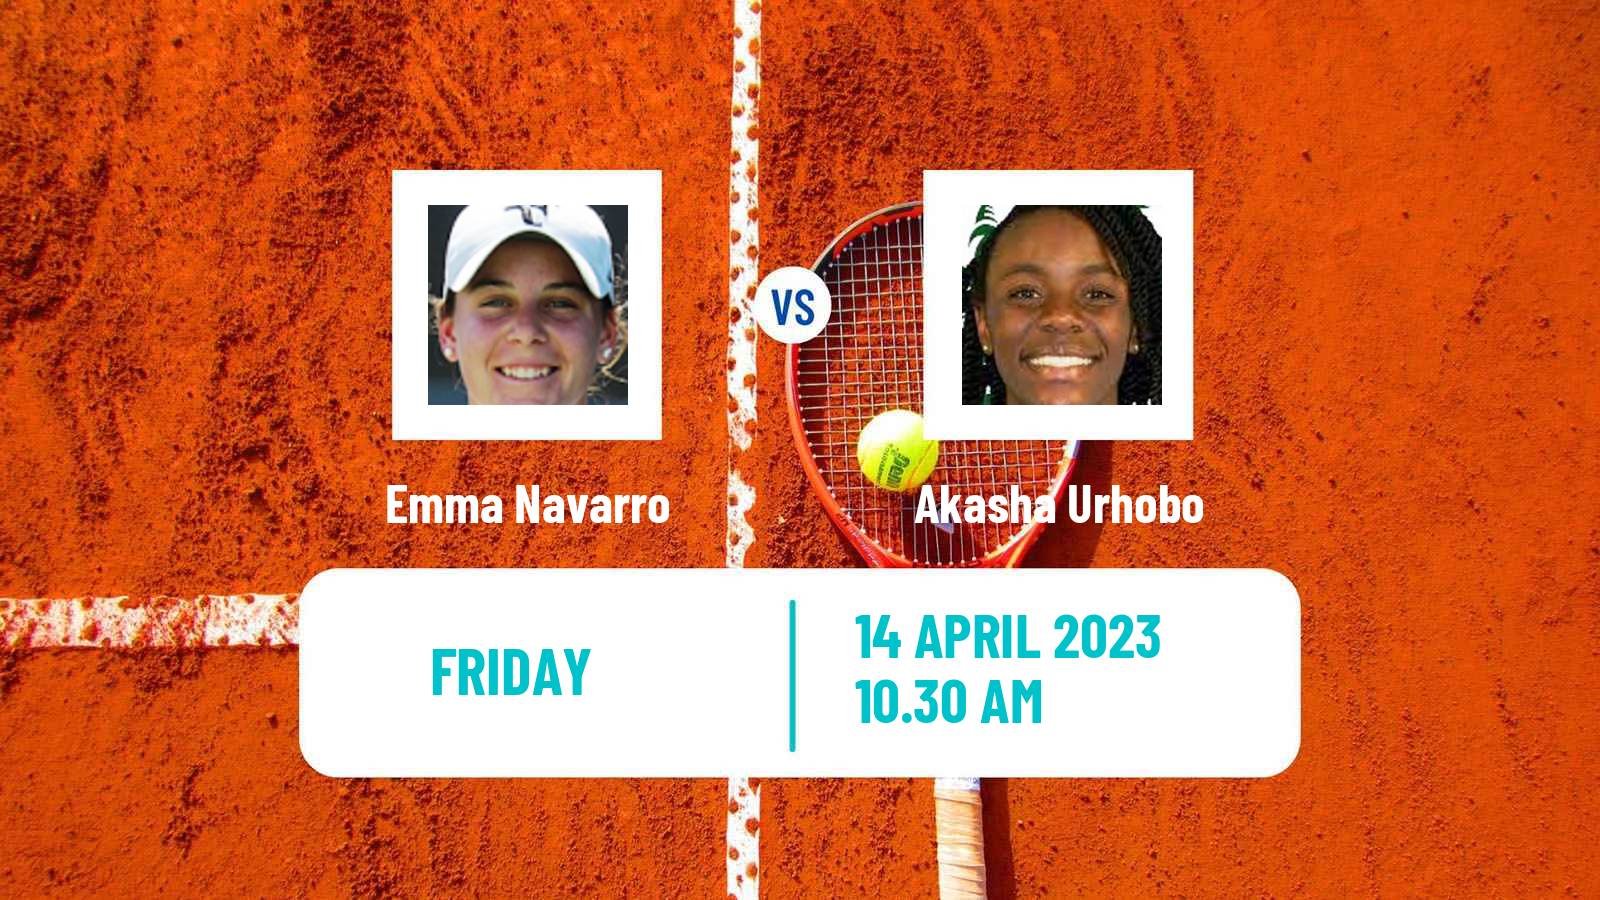 Tennis ITF Tournaments Emma Navarro - Akasha Urhobo